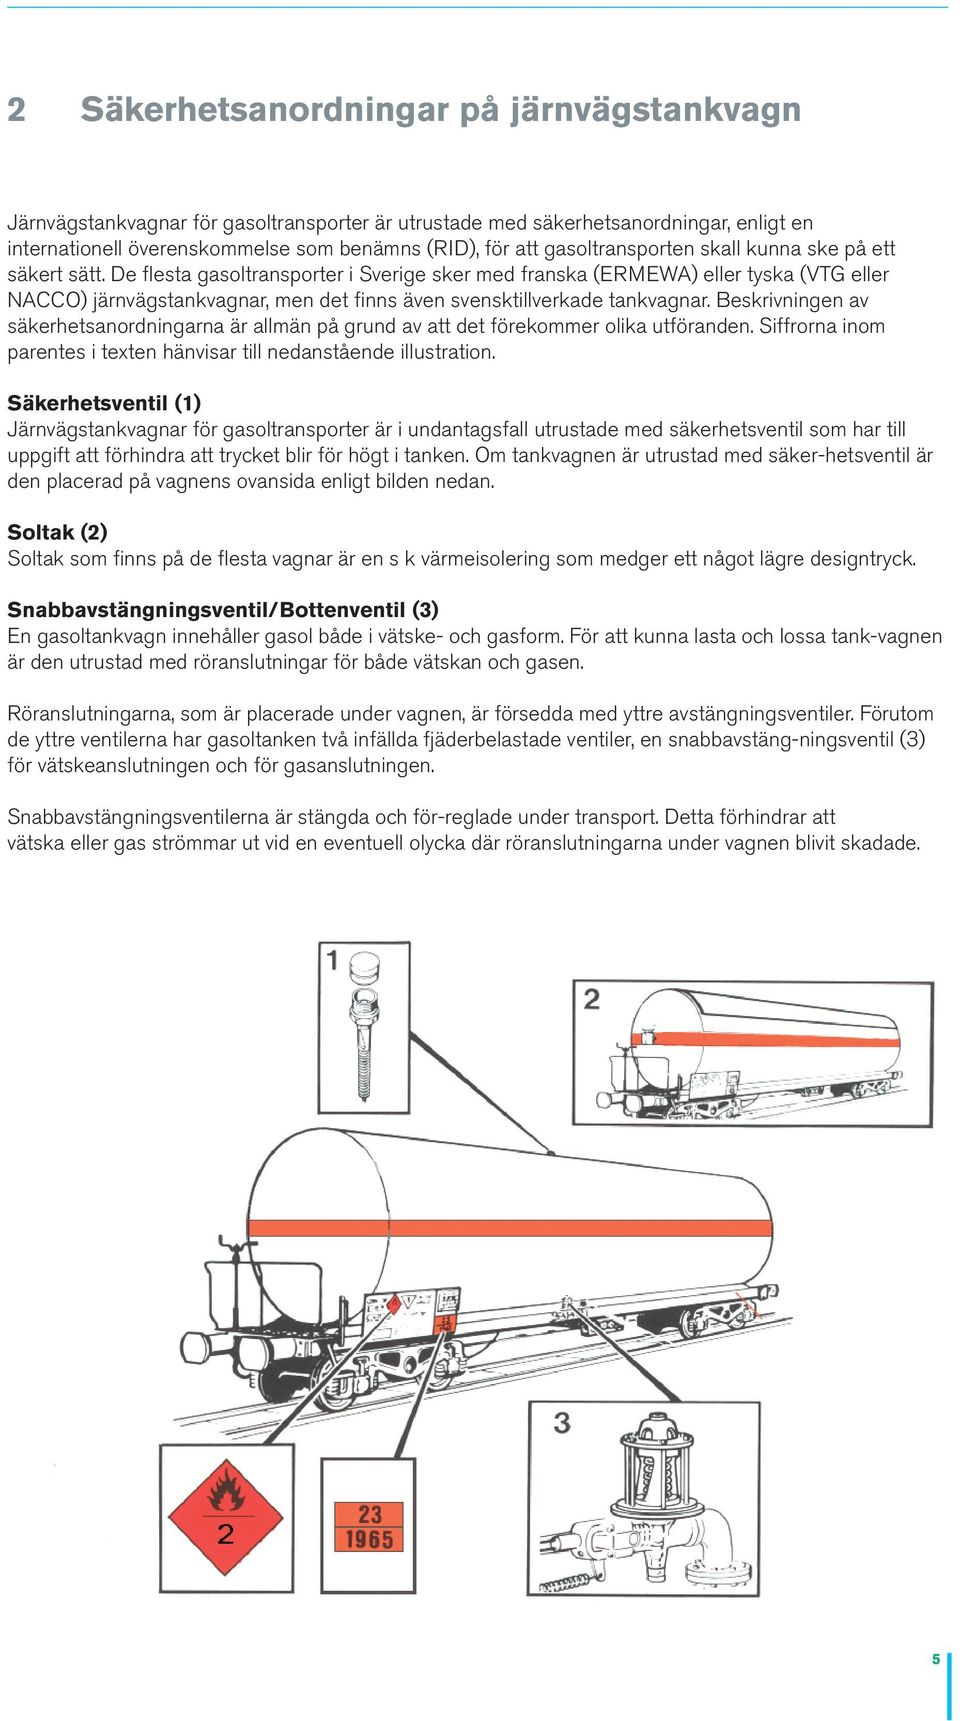 De flesta gasoltransporter i Sverige sker med franska (ERMEWA) eller tyska (VTG eller NACCO) järnvägstankvagnar, men det finns även svensktillverkade tankvagnar.